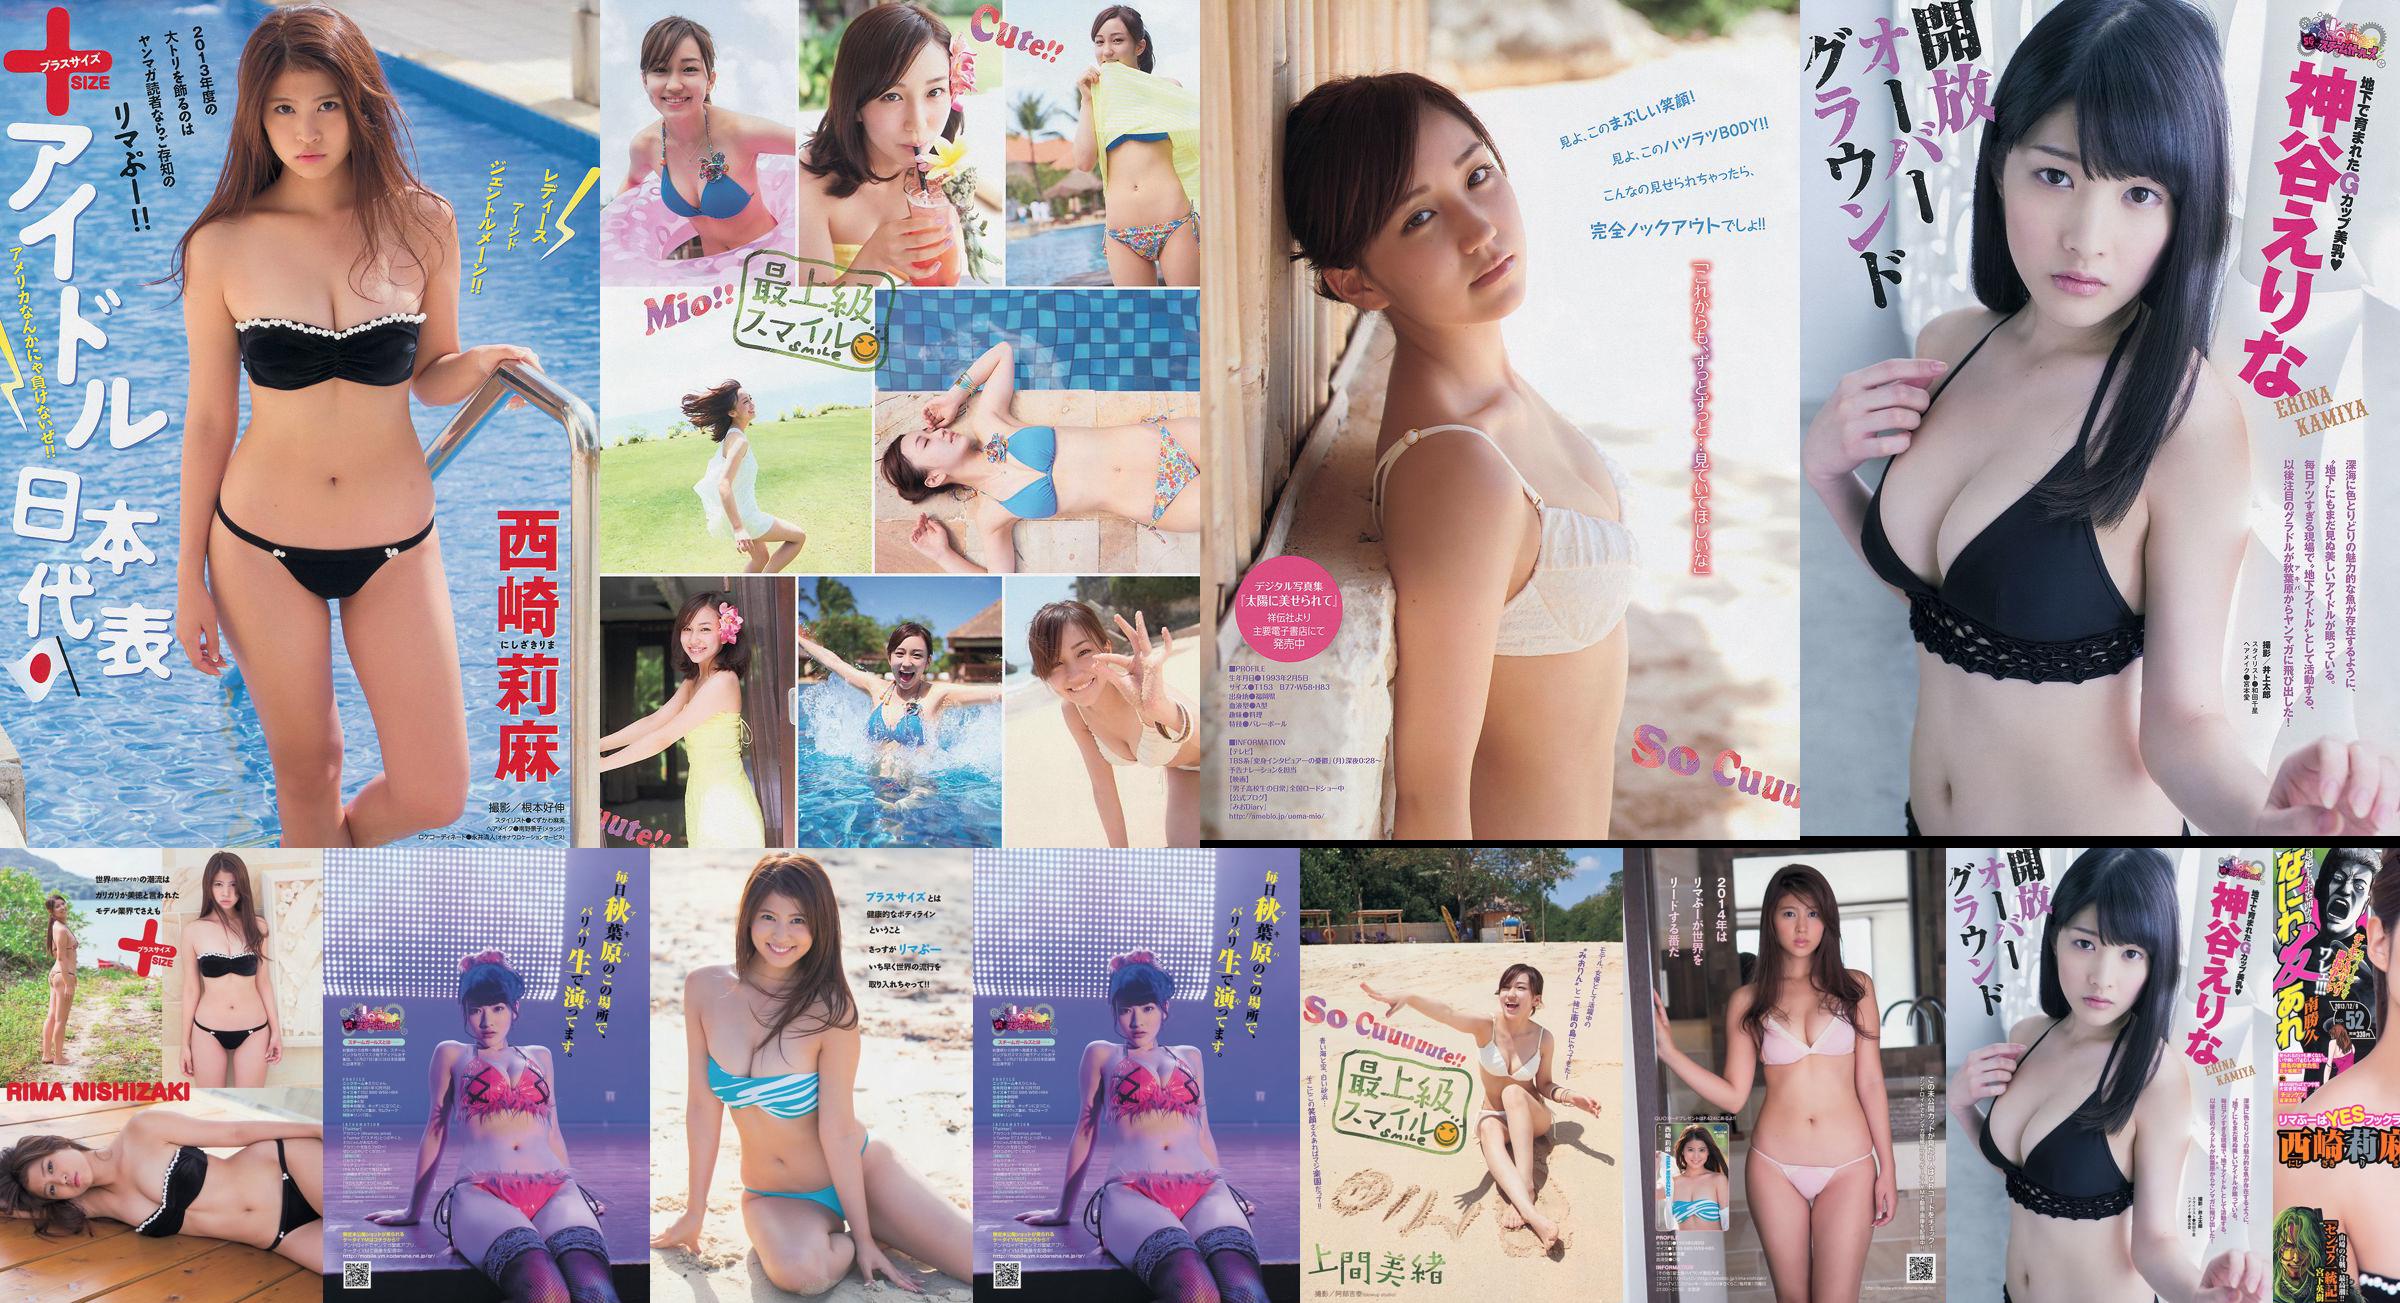 [Young Magazine] Rima Nishizaki Mio Uema Erina Kamiya 2013 No.52 Foto Moshi No.fd38c9 Pagina 2